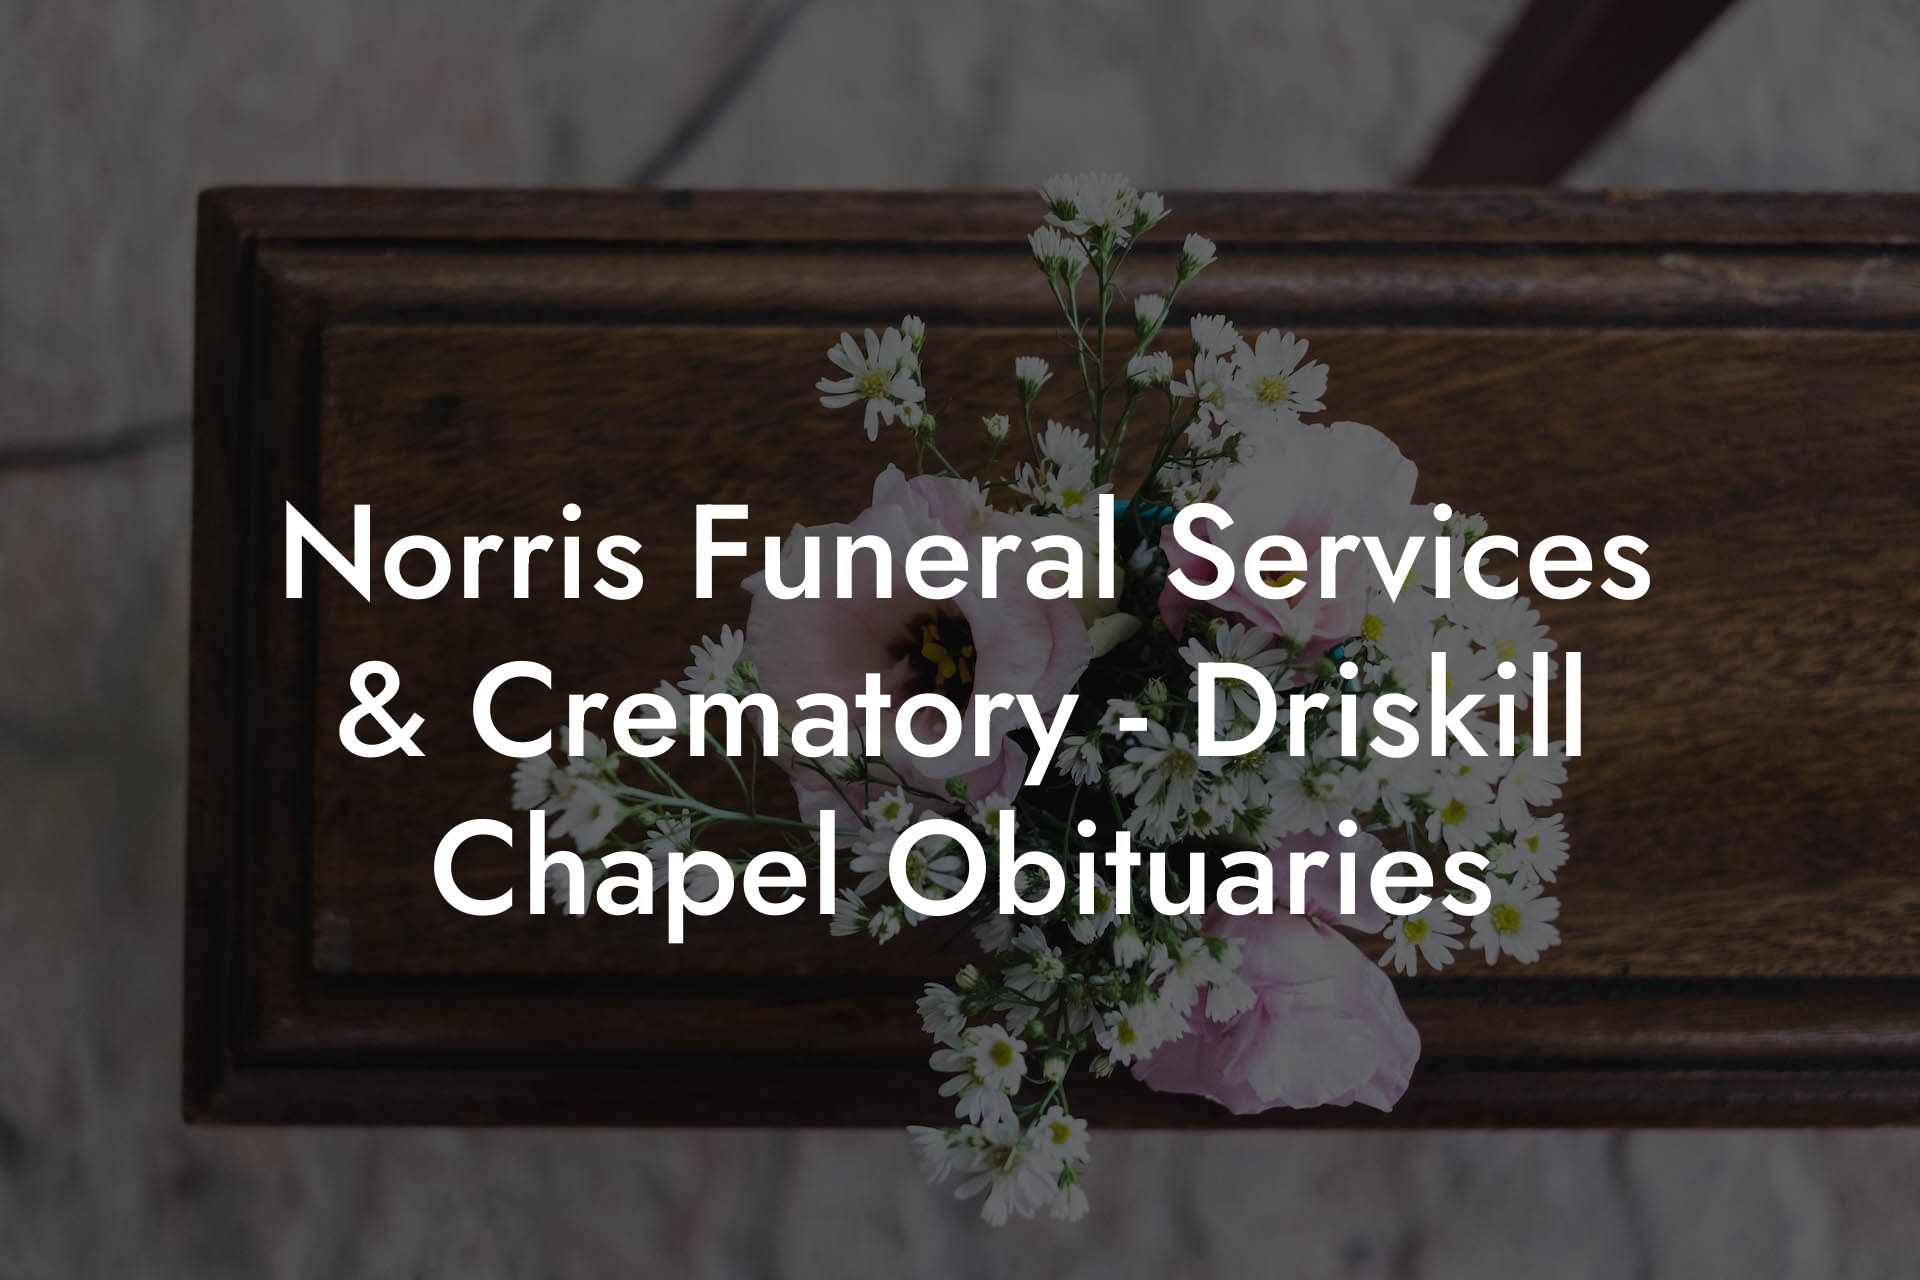 Norris Funeral Services & Crematory - Driskill Chapel Obituaries